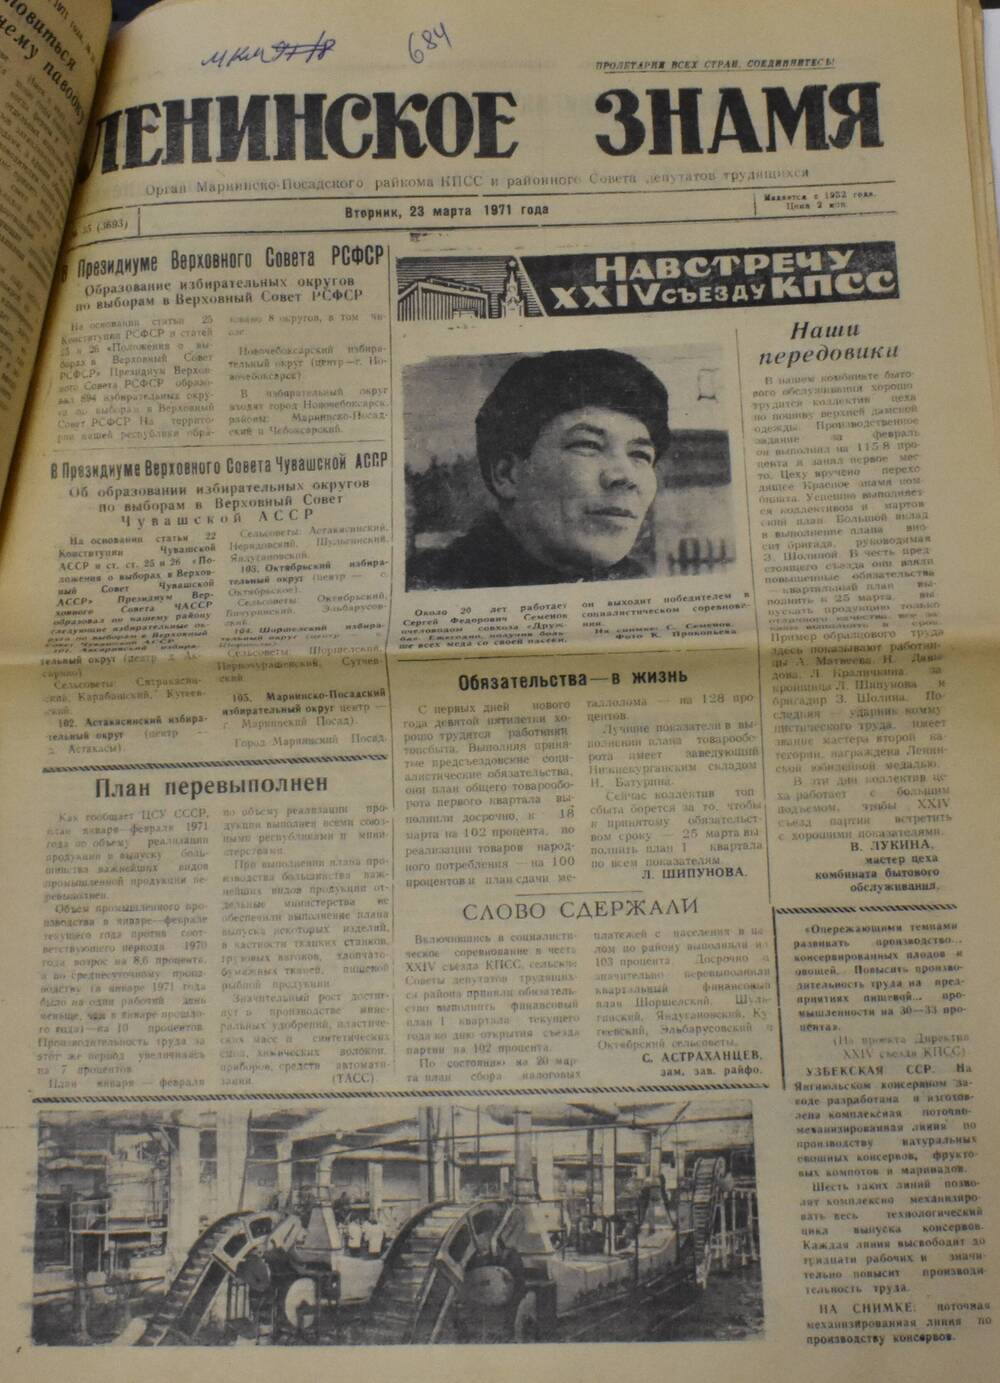 Газета Ленинское знамя № 35 от 23 марта 1971